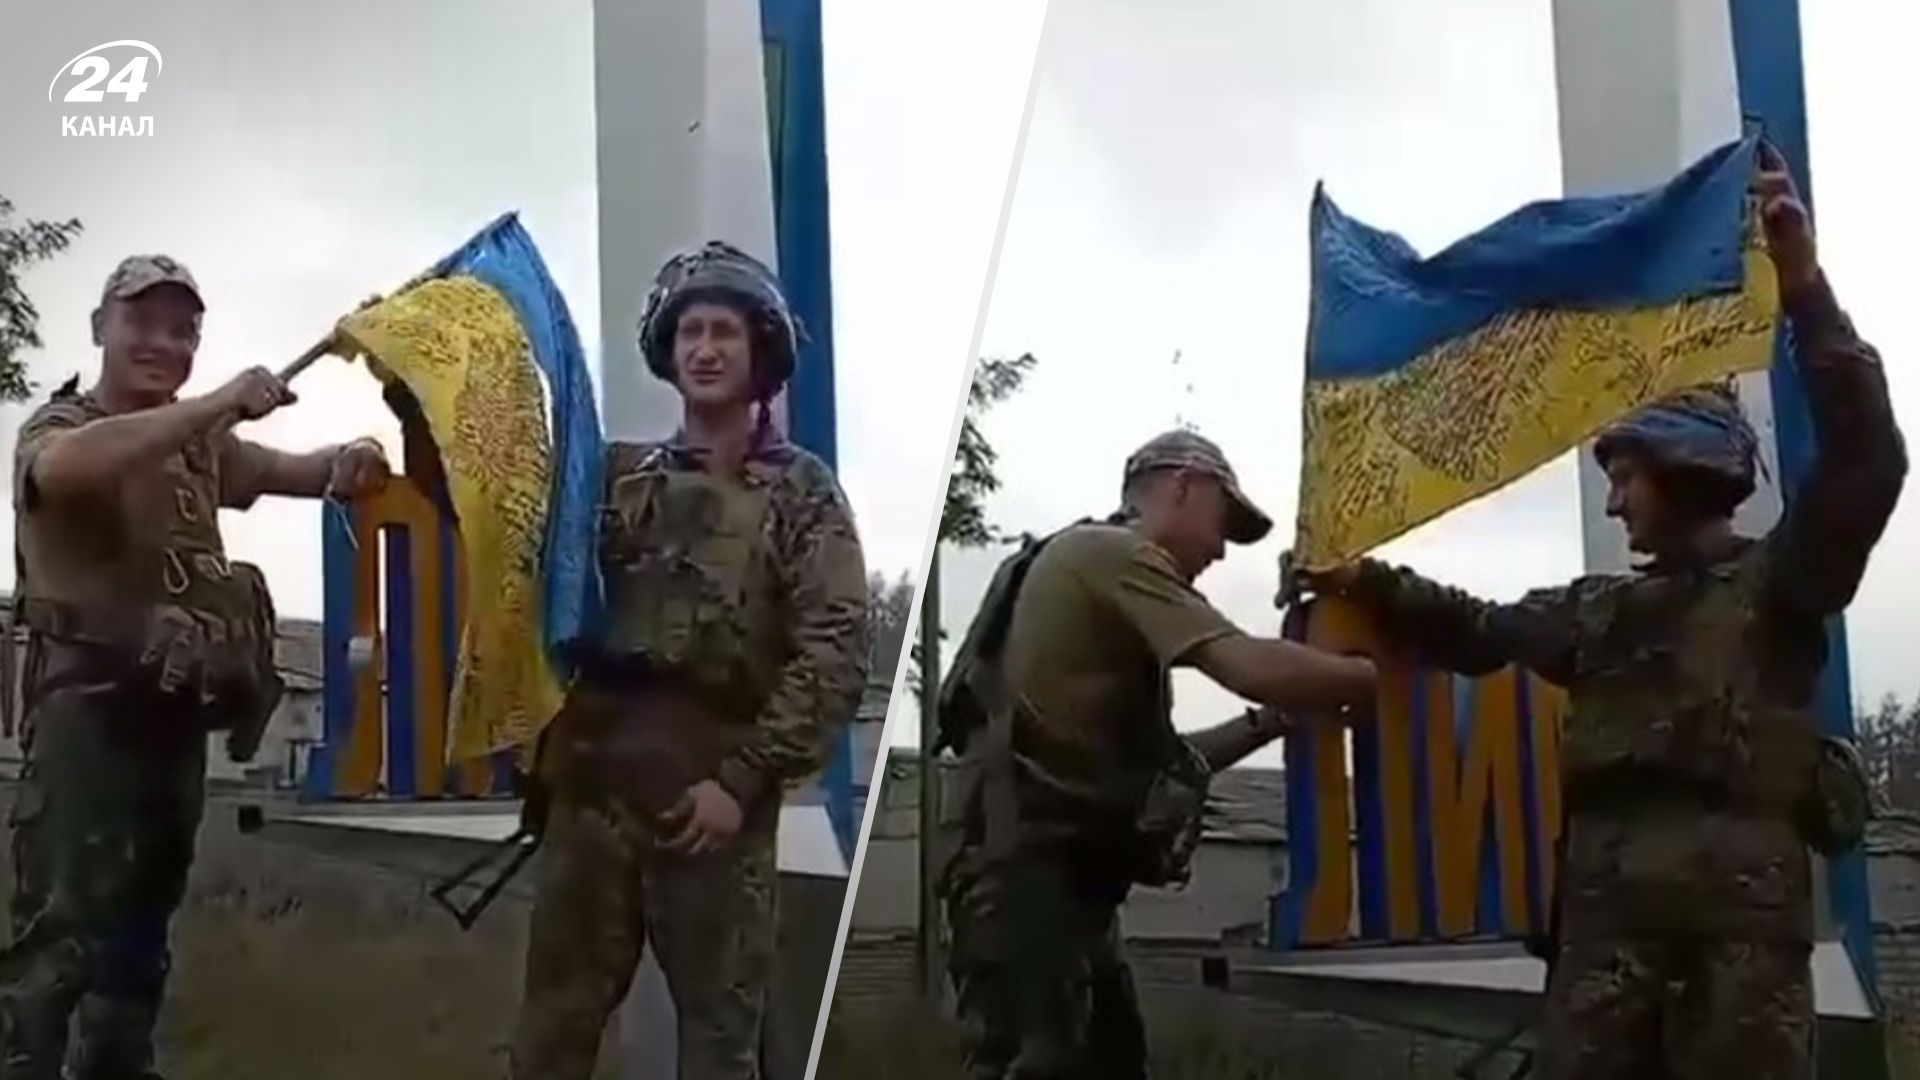 Флаг Украины уже в окрестностях Лимана: в сети показали кадры с военными - 24 Канал